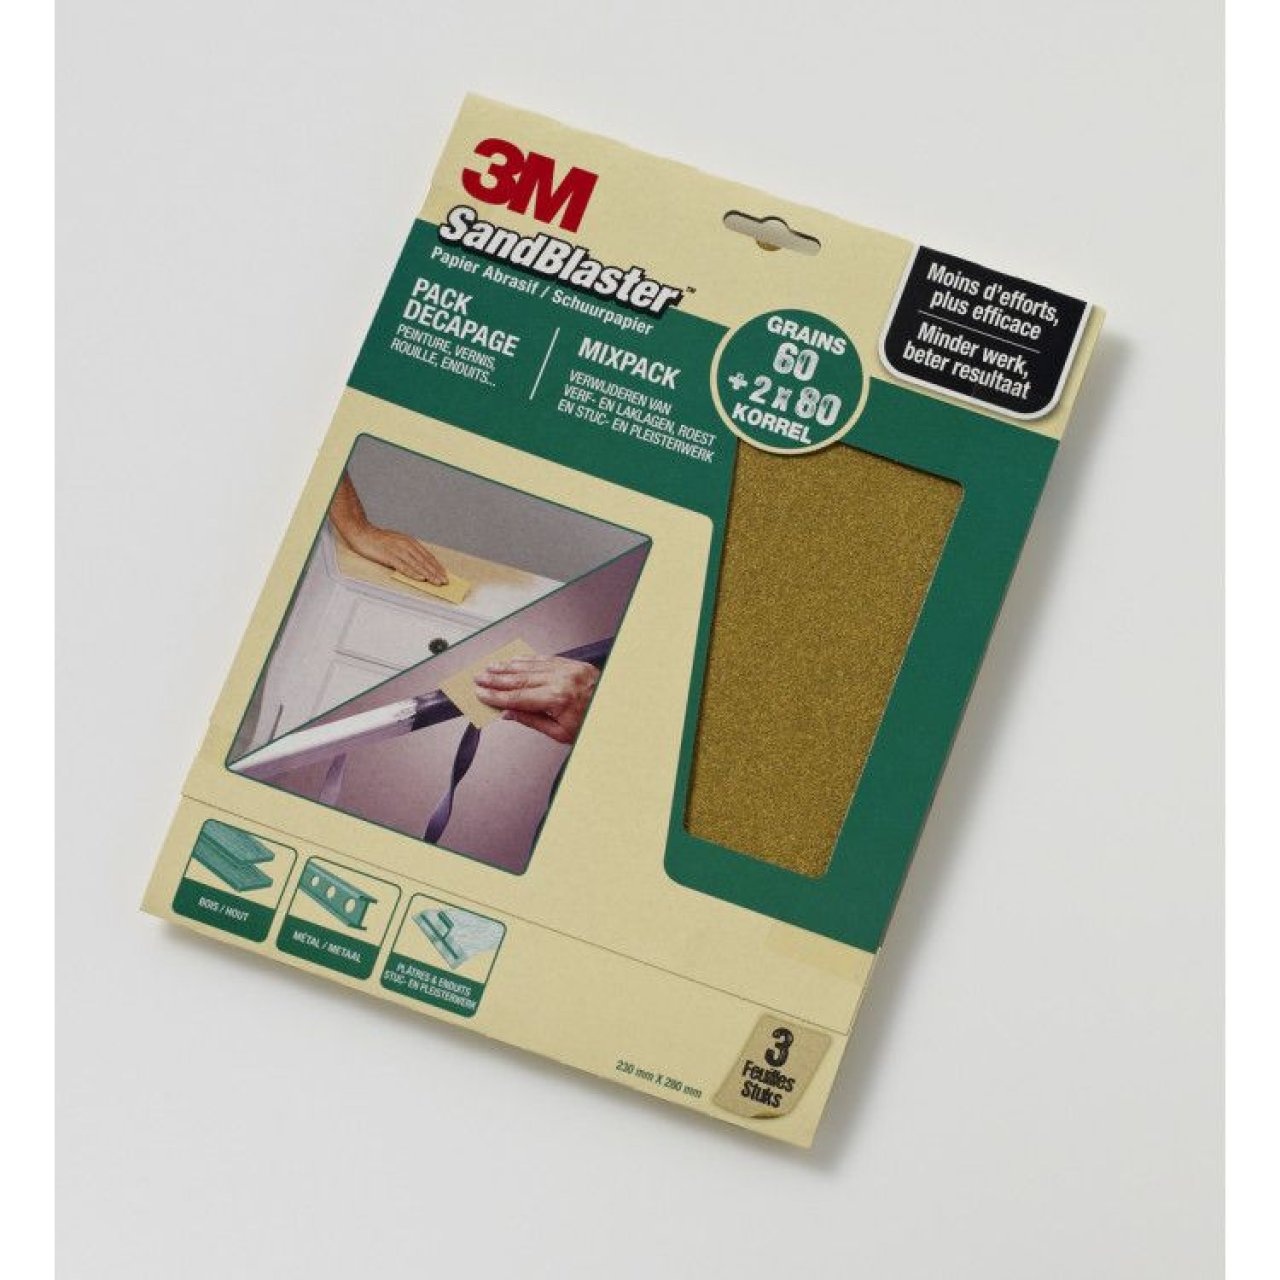 Afdeling wolf Geneigd zijn 3M SandBlaster schuurpapier groen 3 stuks Mixpack kopen - Verf & Behang  Specialist